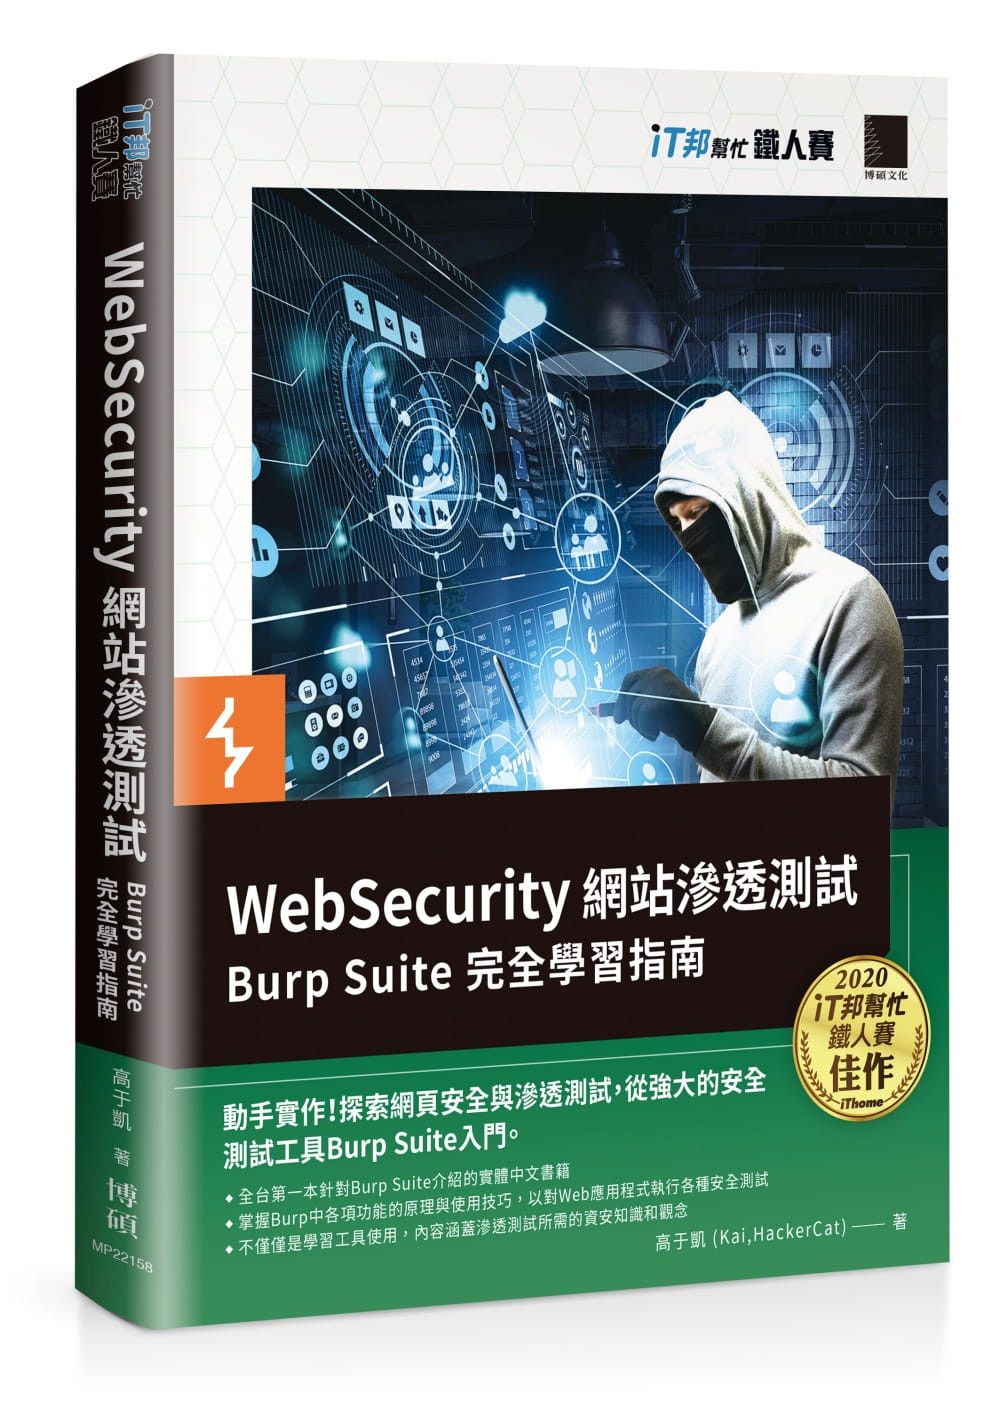 WebSecurity